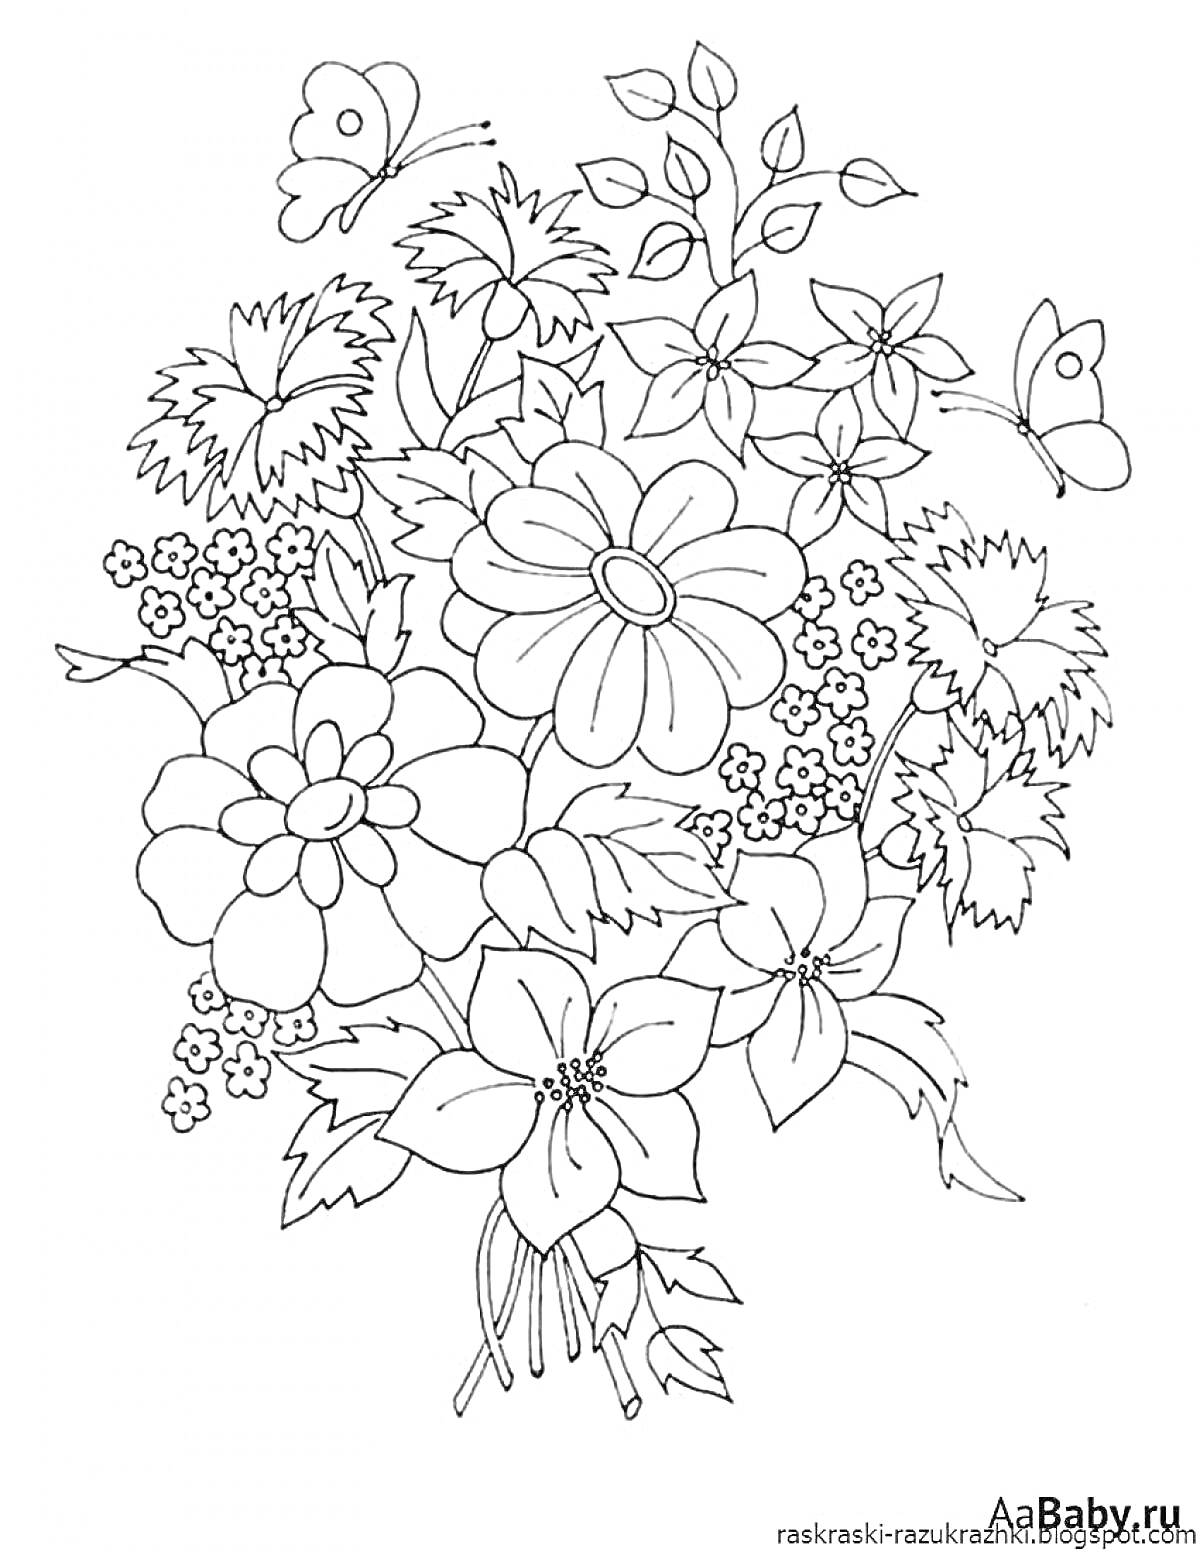 Раскраска Букет с крупными и мелкими цветами, листьями и бабочками